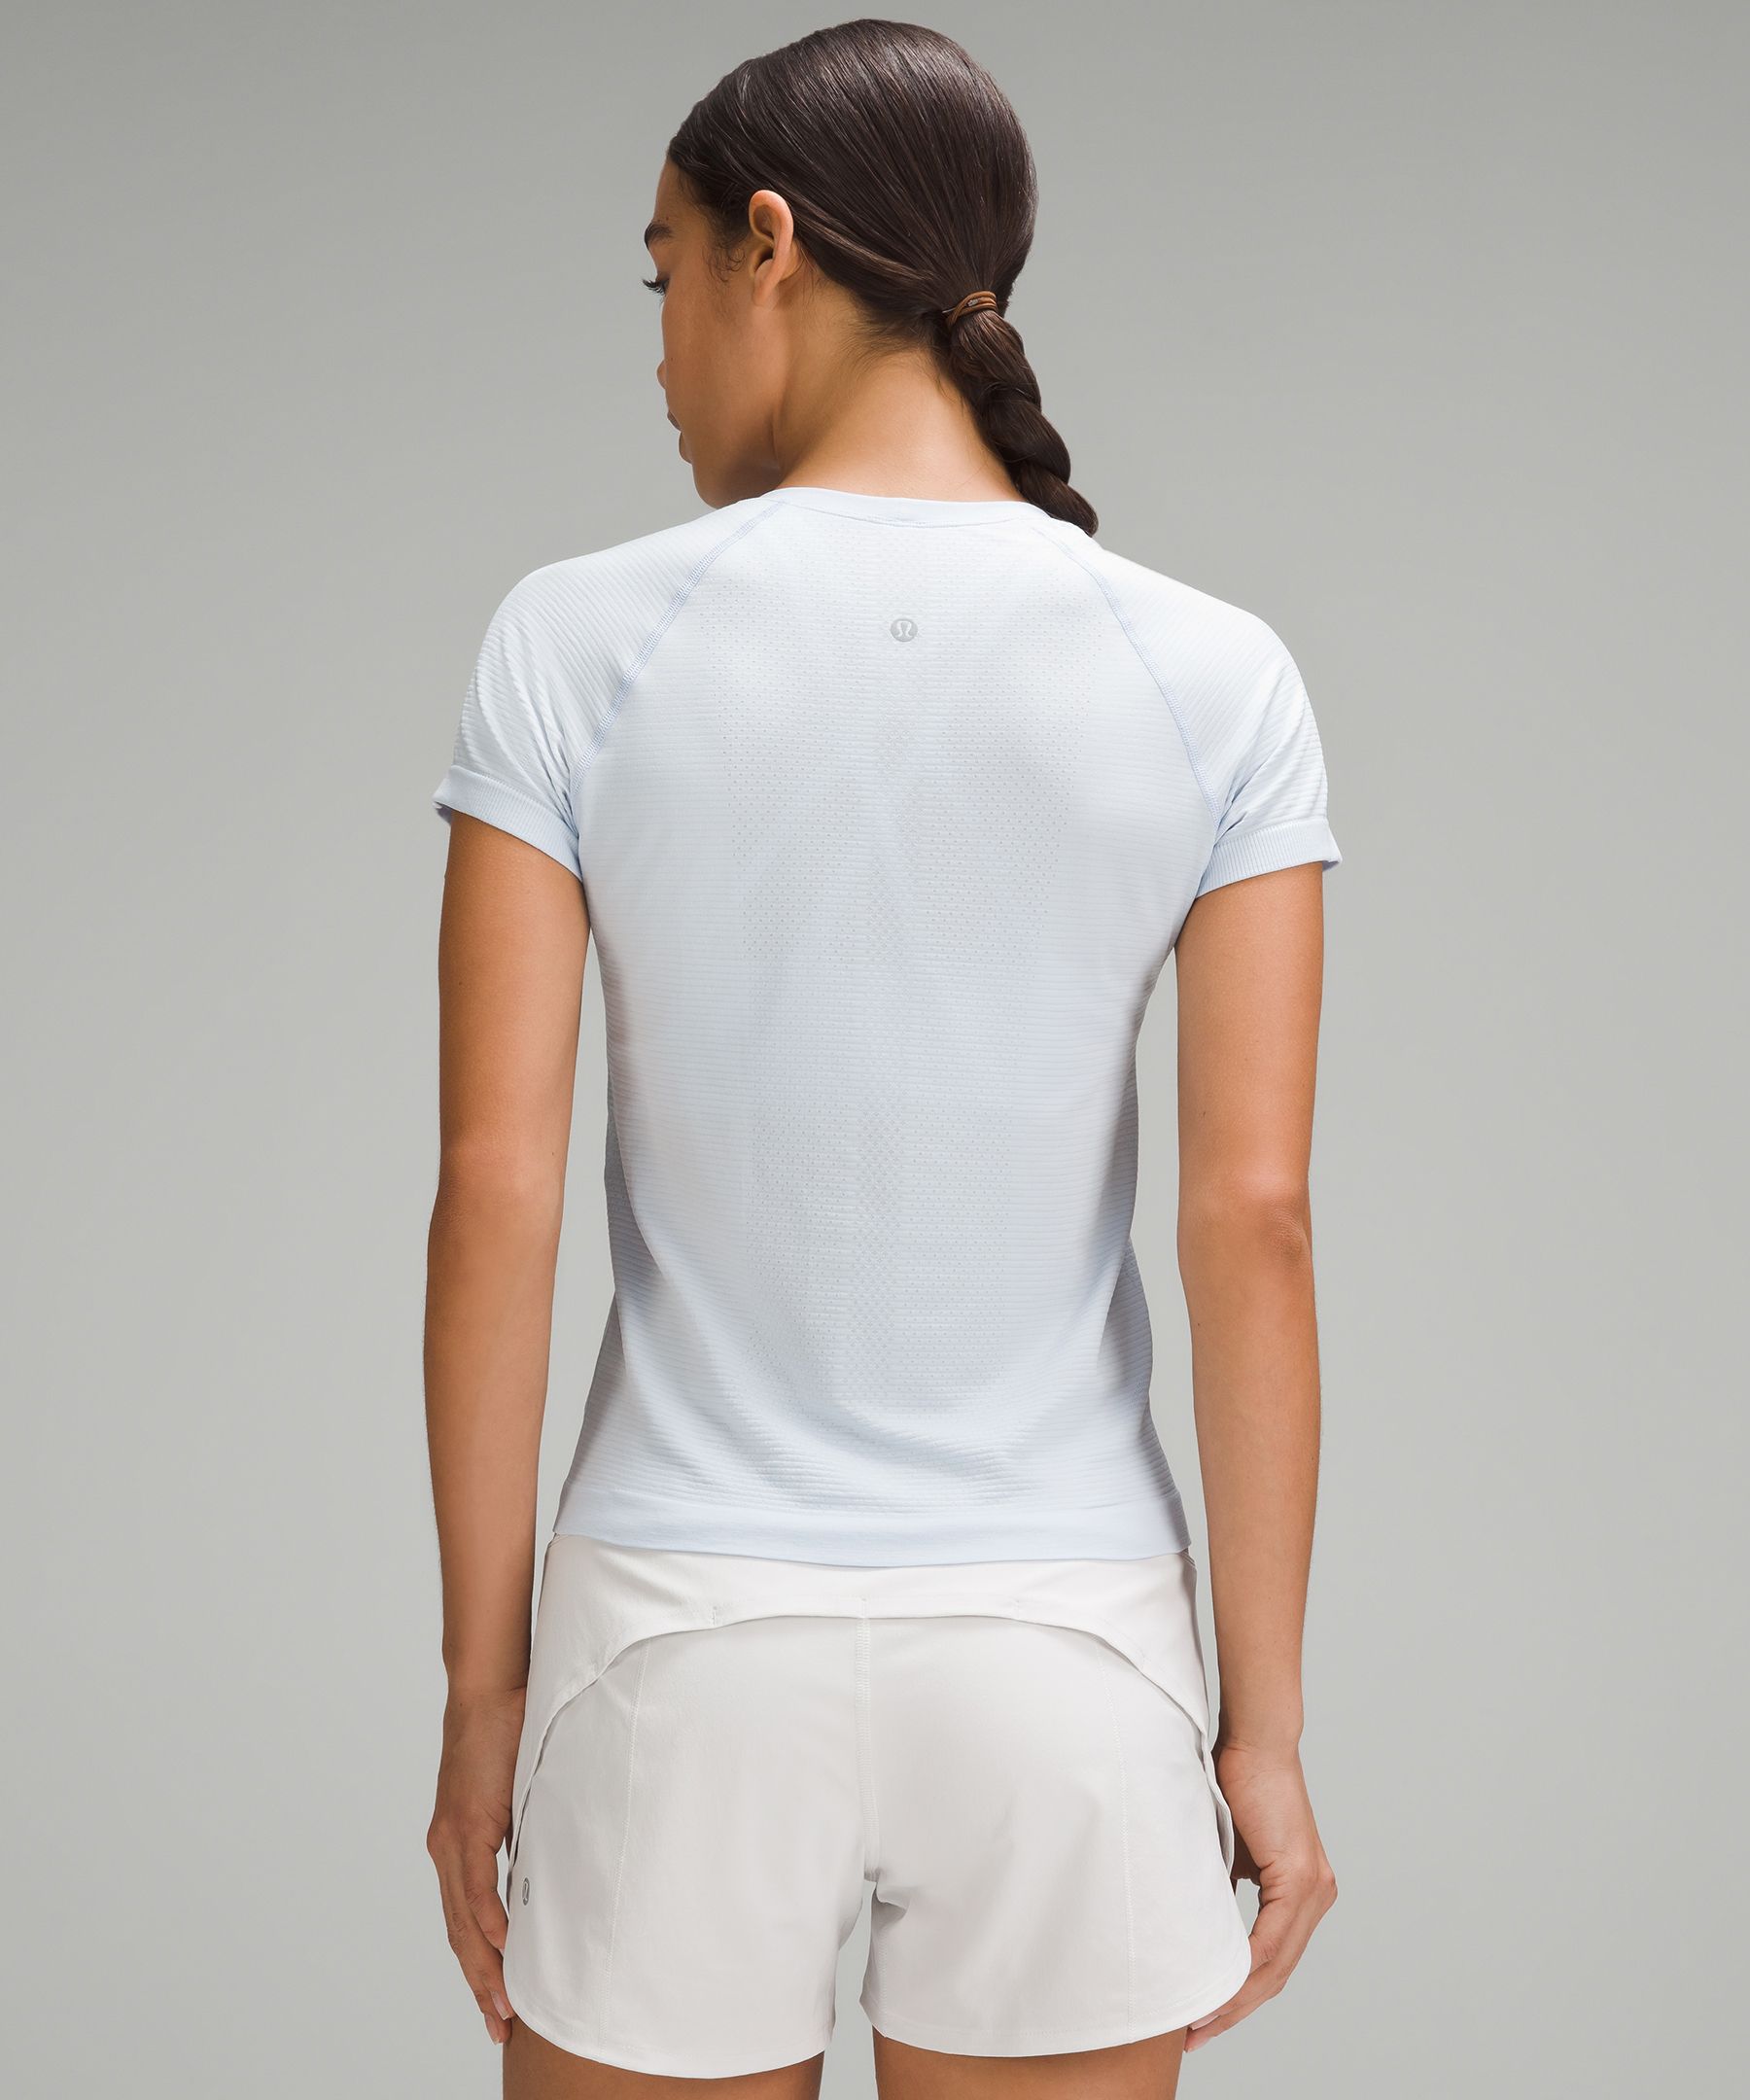 Women Lululemon white short sleeve T-shirt. Size 10. Prev. owned